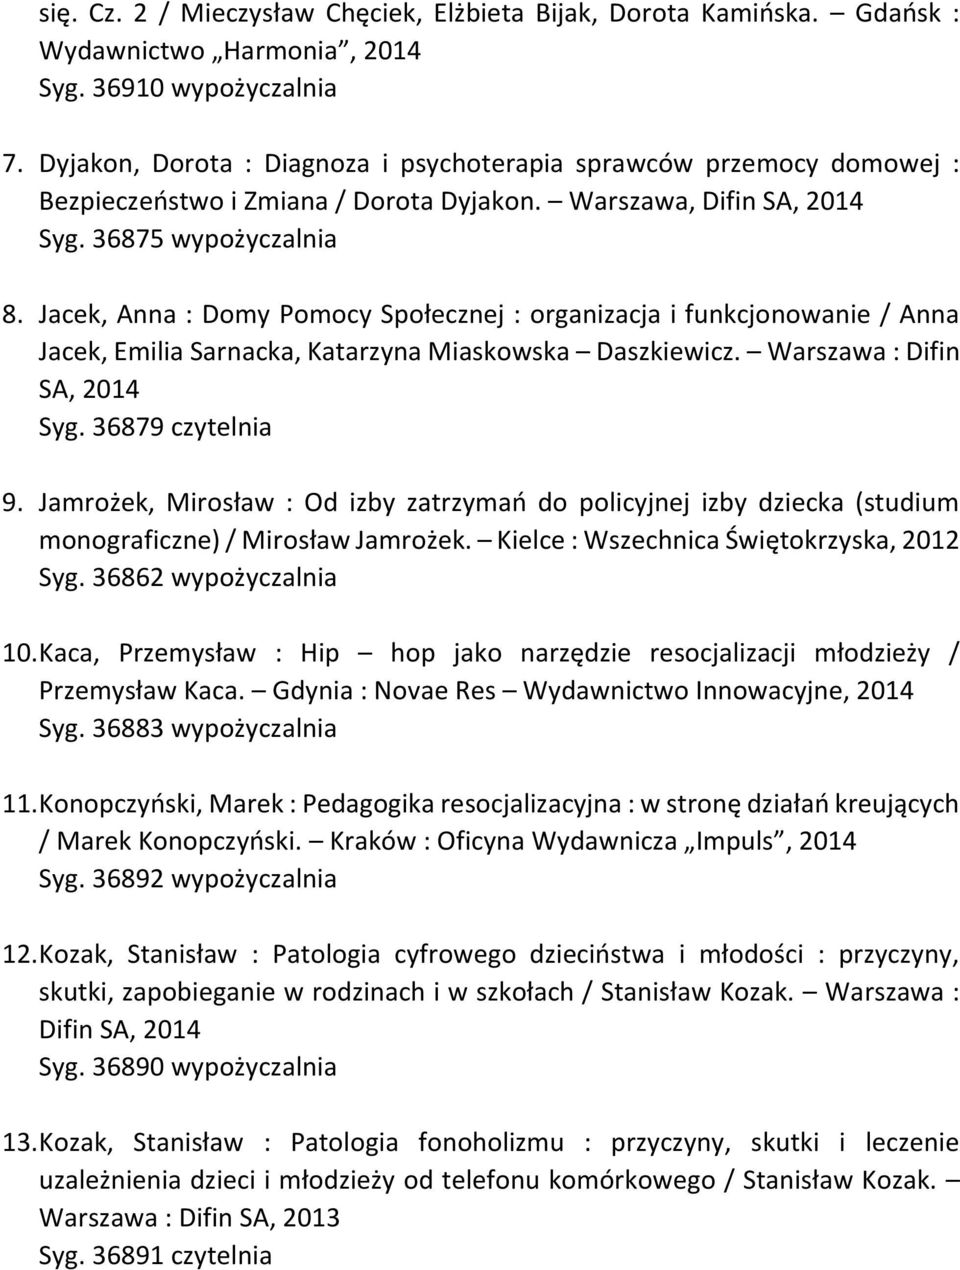 Jacek, Anna : Domy Pomocy Społecznej : organizacja i funkcjonowanie / Anna Jacek, Emilia Sarnacka, Katarzyna Miaskowska Daszkiewicz. Warszawa : Difin SA, 2014 Syg. 36879 czytelnia 9.